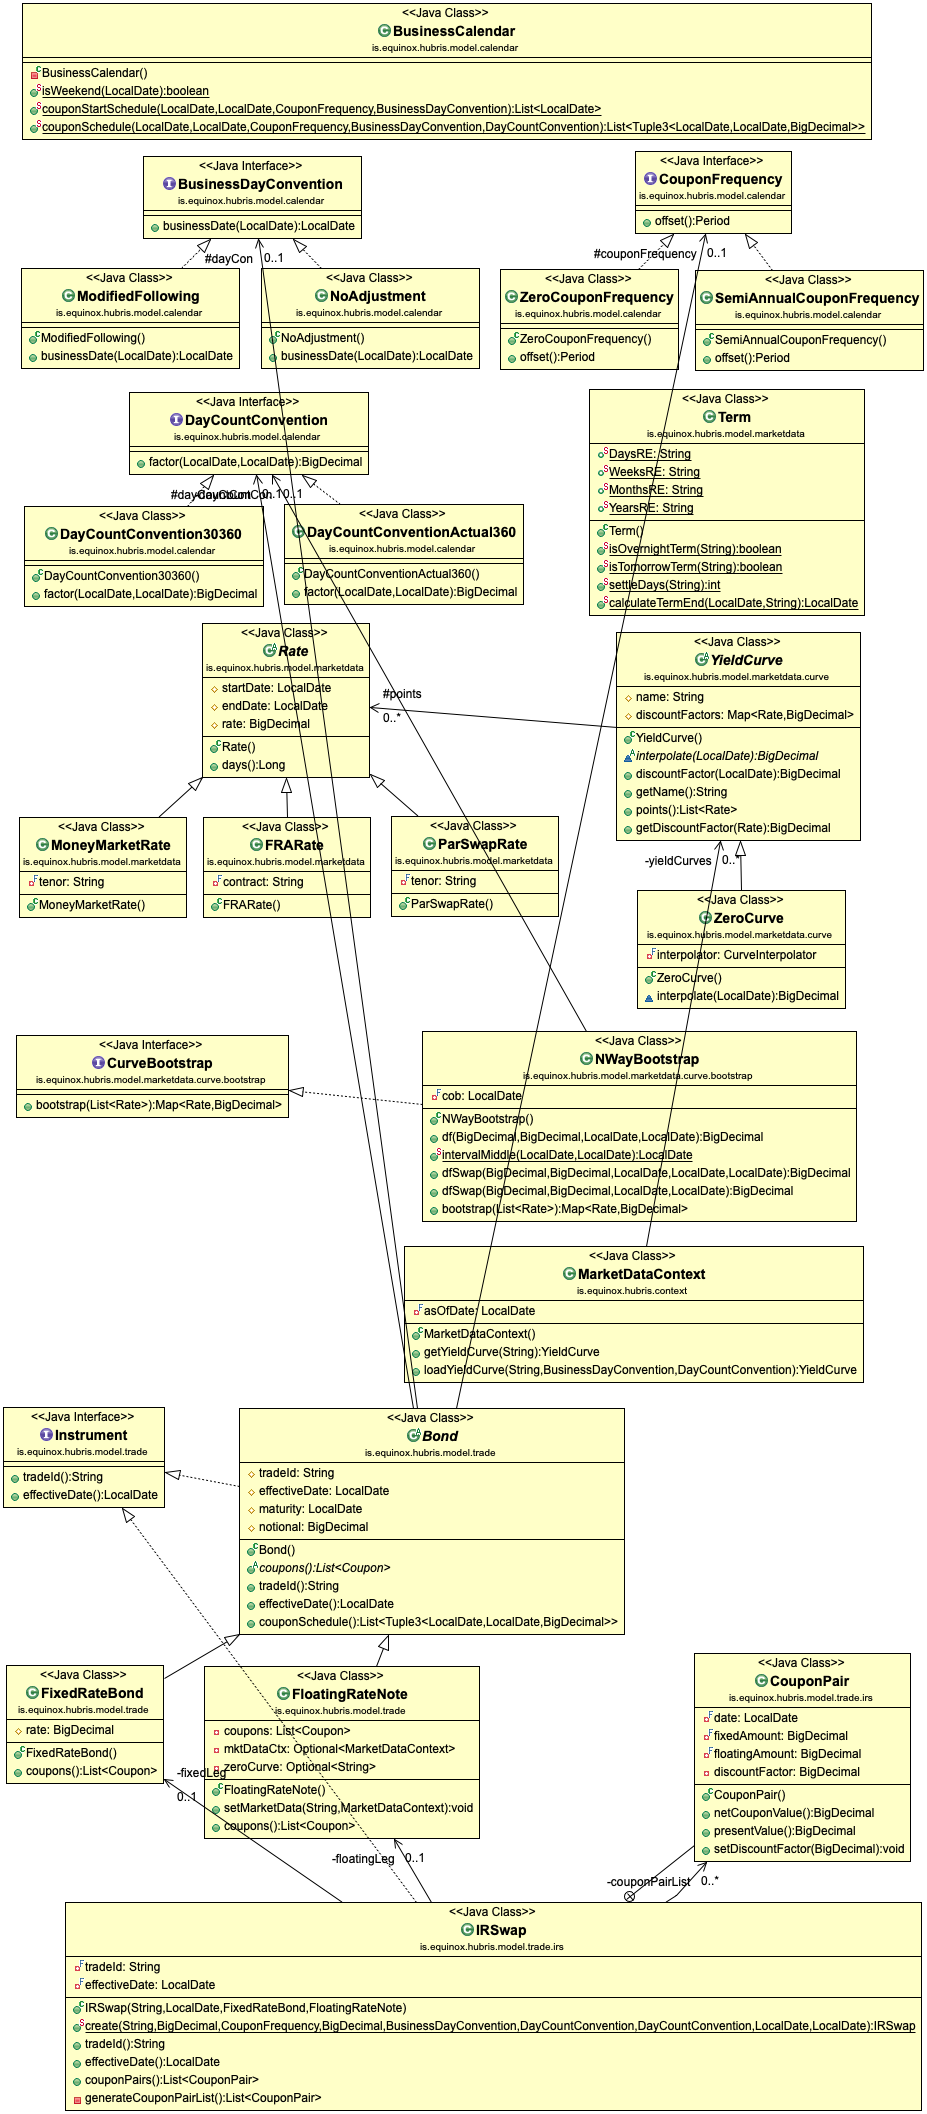 Hubris UML class diagram